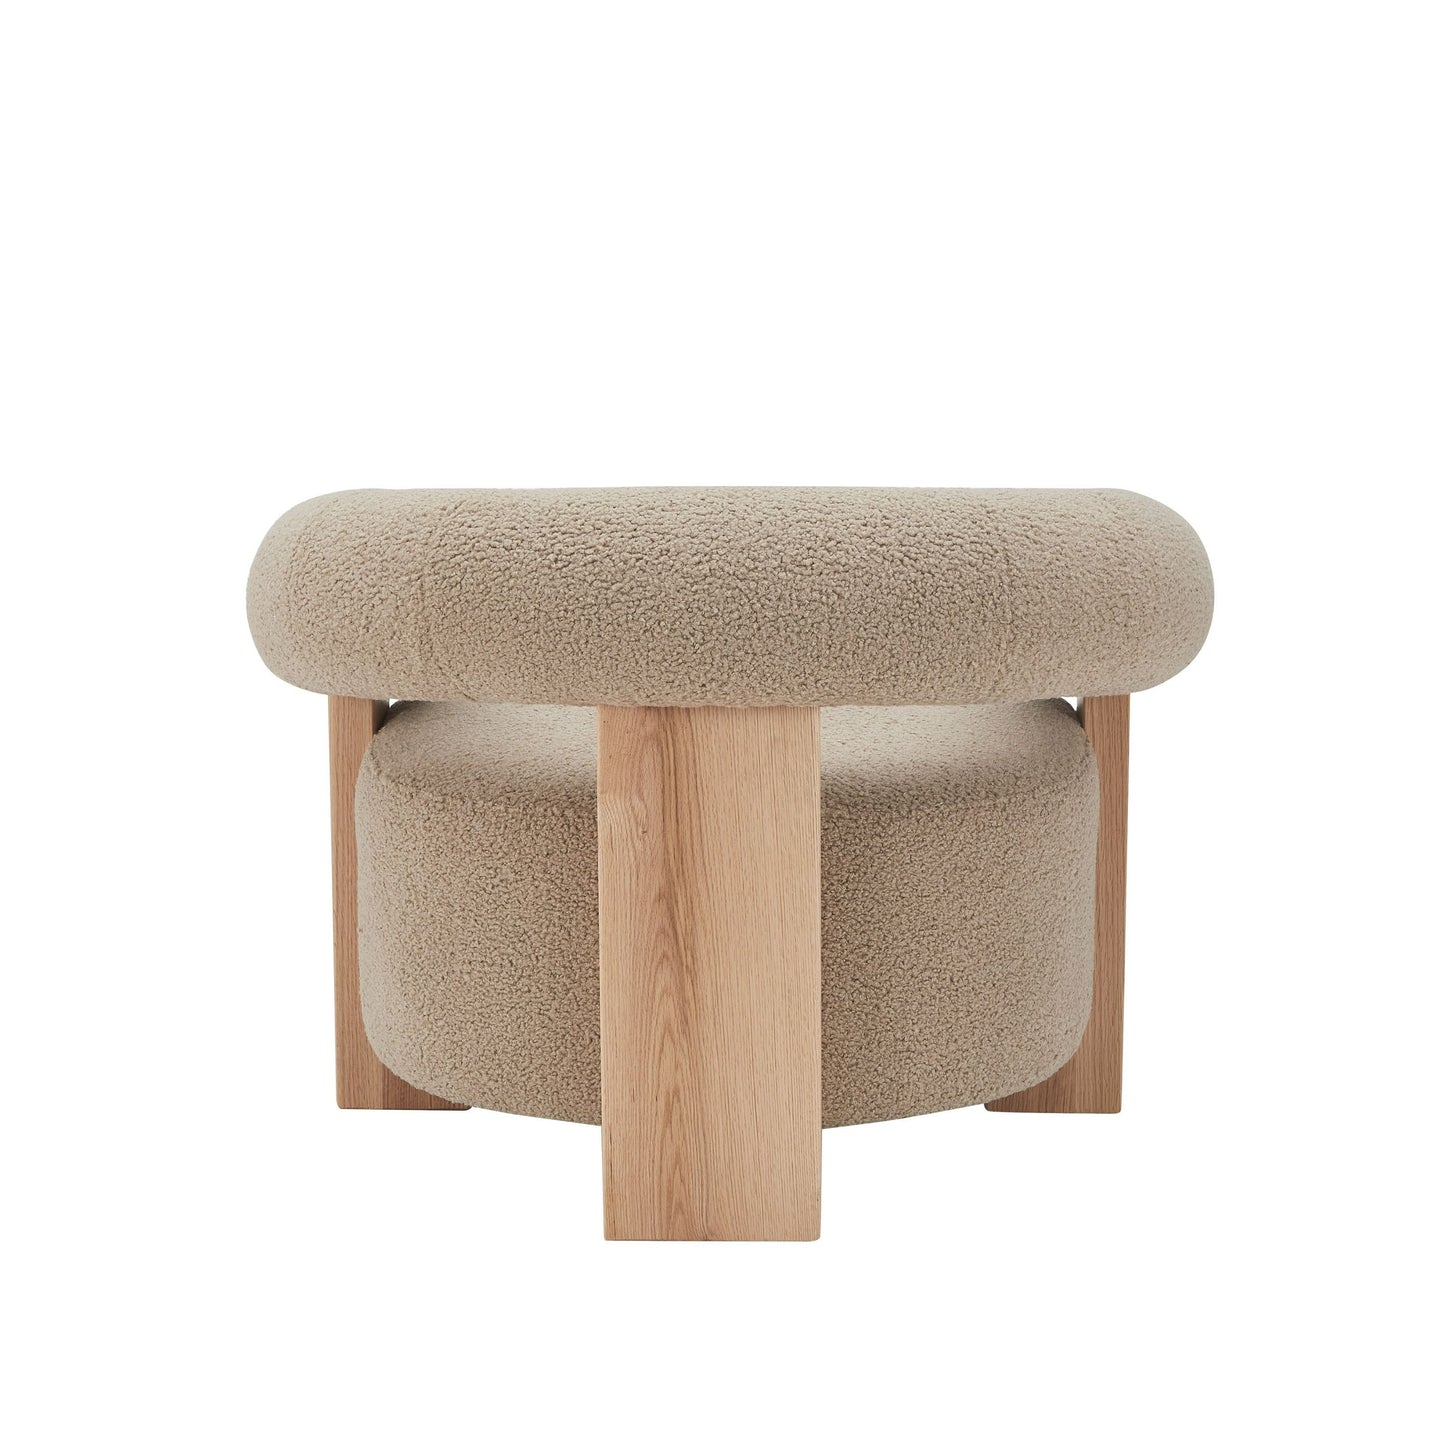 Modrest Alamo - Modern Beige Faux Sheepskin + Oak Accent Chair